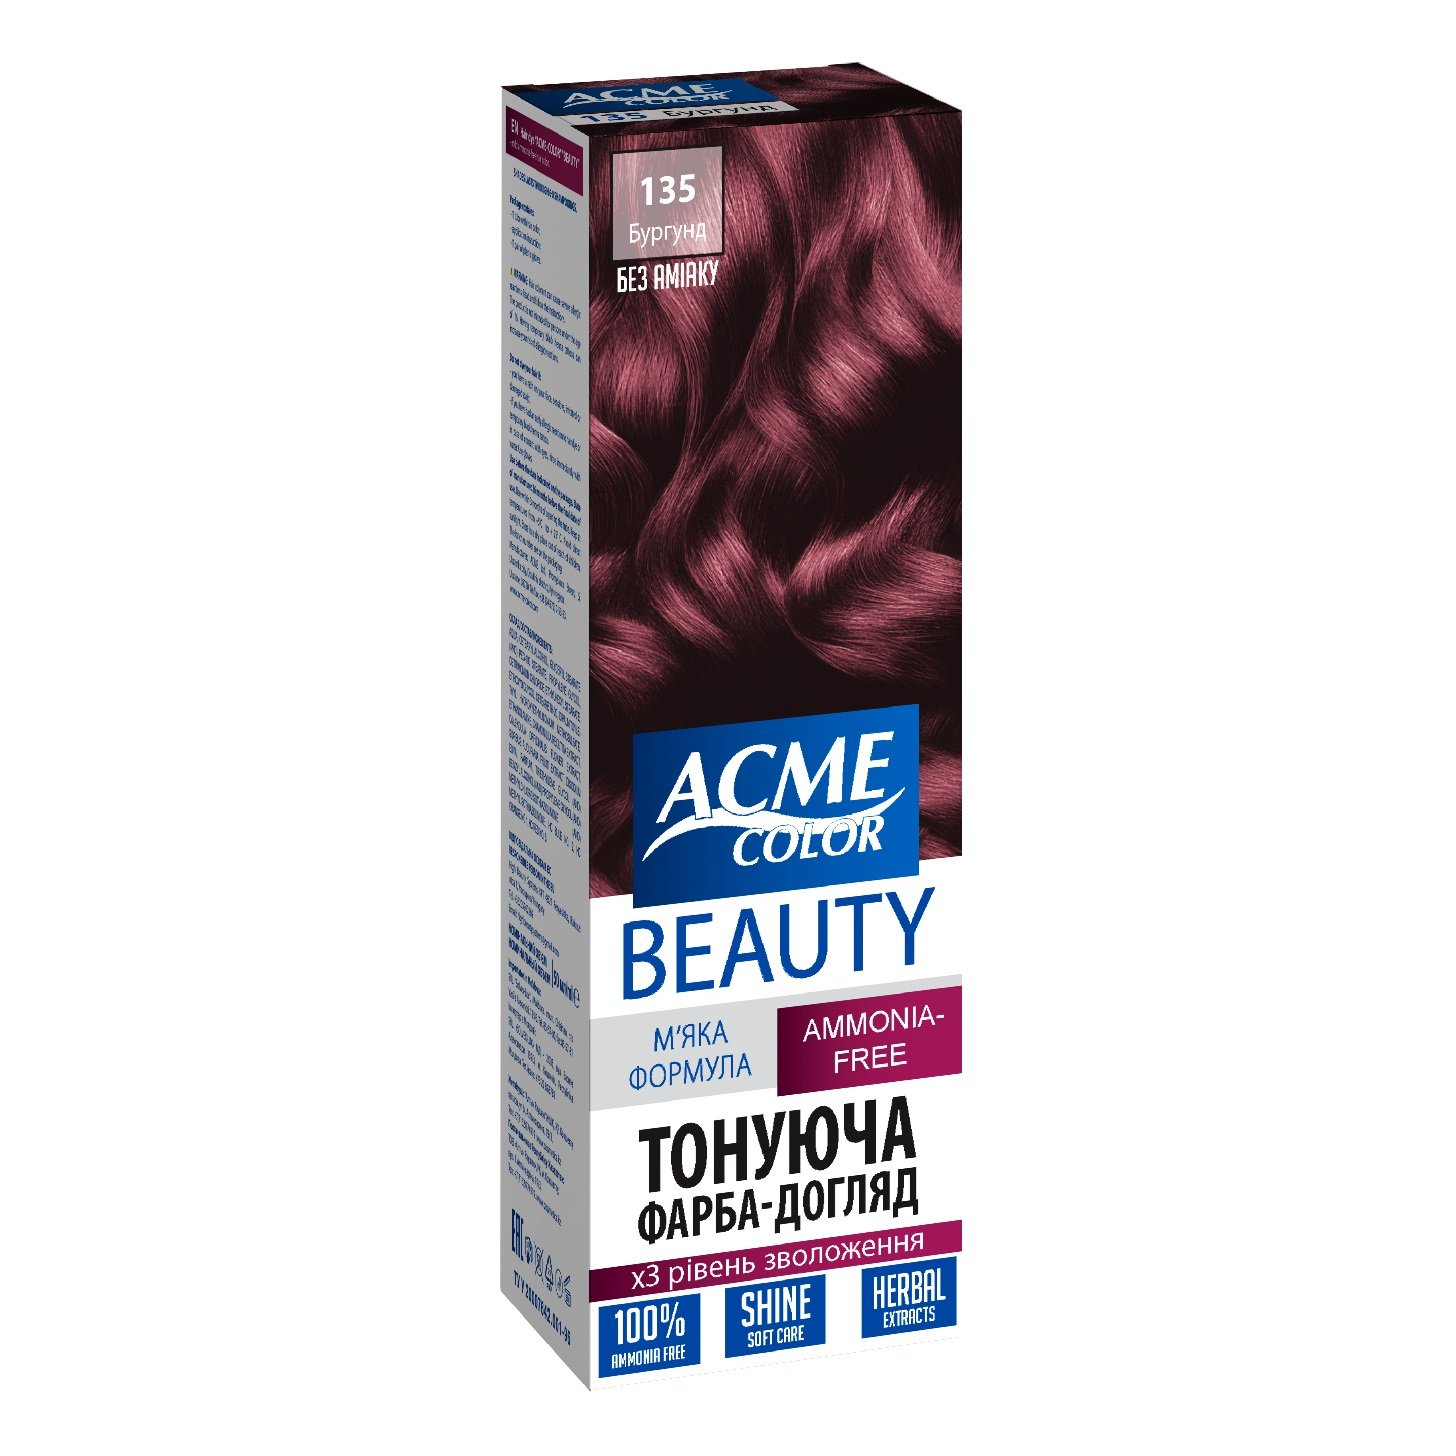 Гель-фарба для волосся Acme-color Beauty, відтінок 135 (Бургунд), 69 г - фото 1